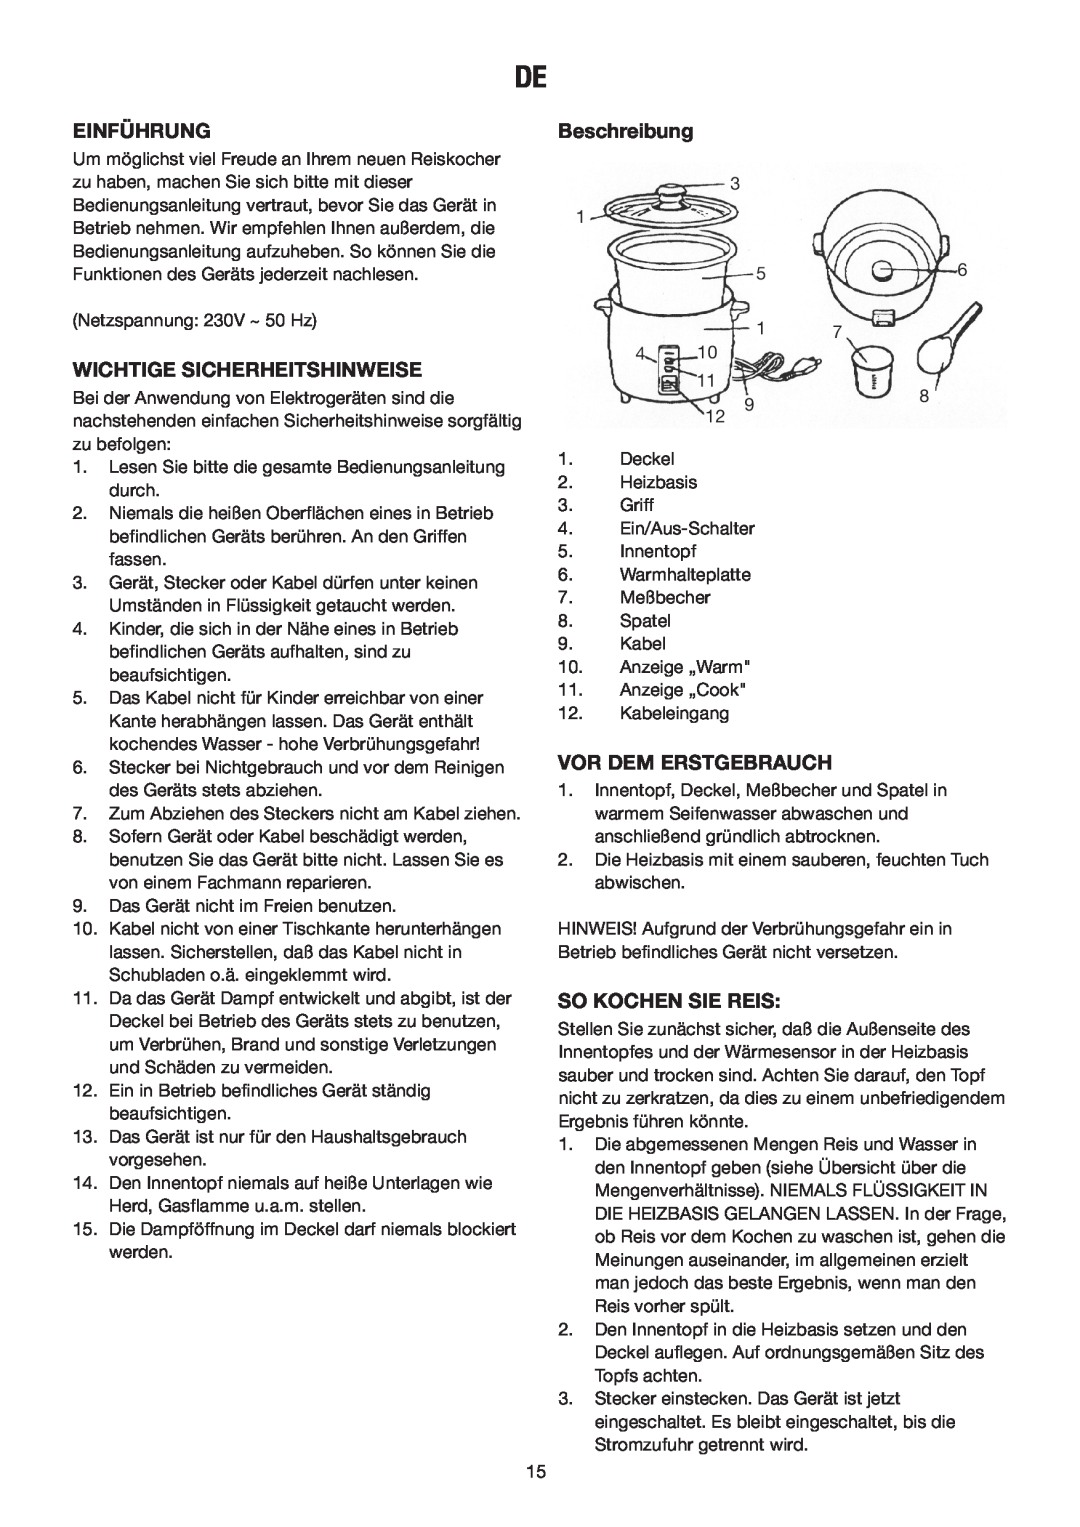 Melissa N/A manual Einführung, Beschreibung, Wichtige Sicherheitshinweise, Vor Dem Erstgebrauch, So Kochen Sie Reis 